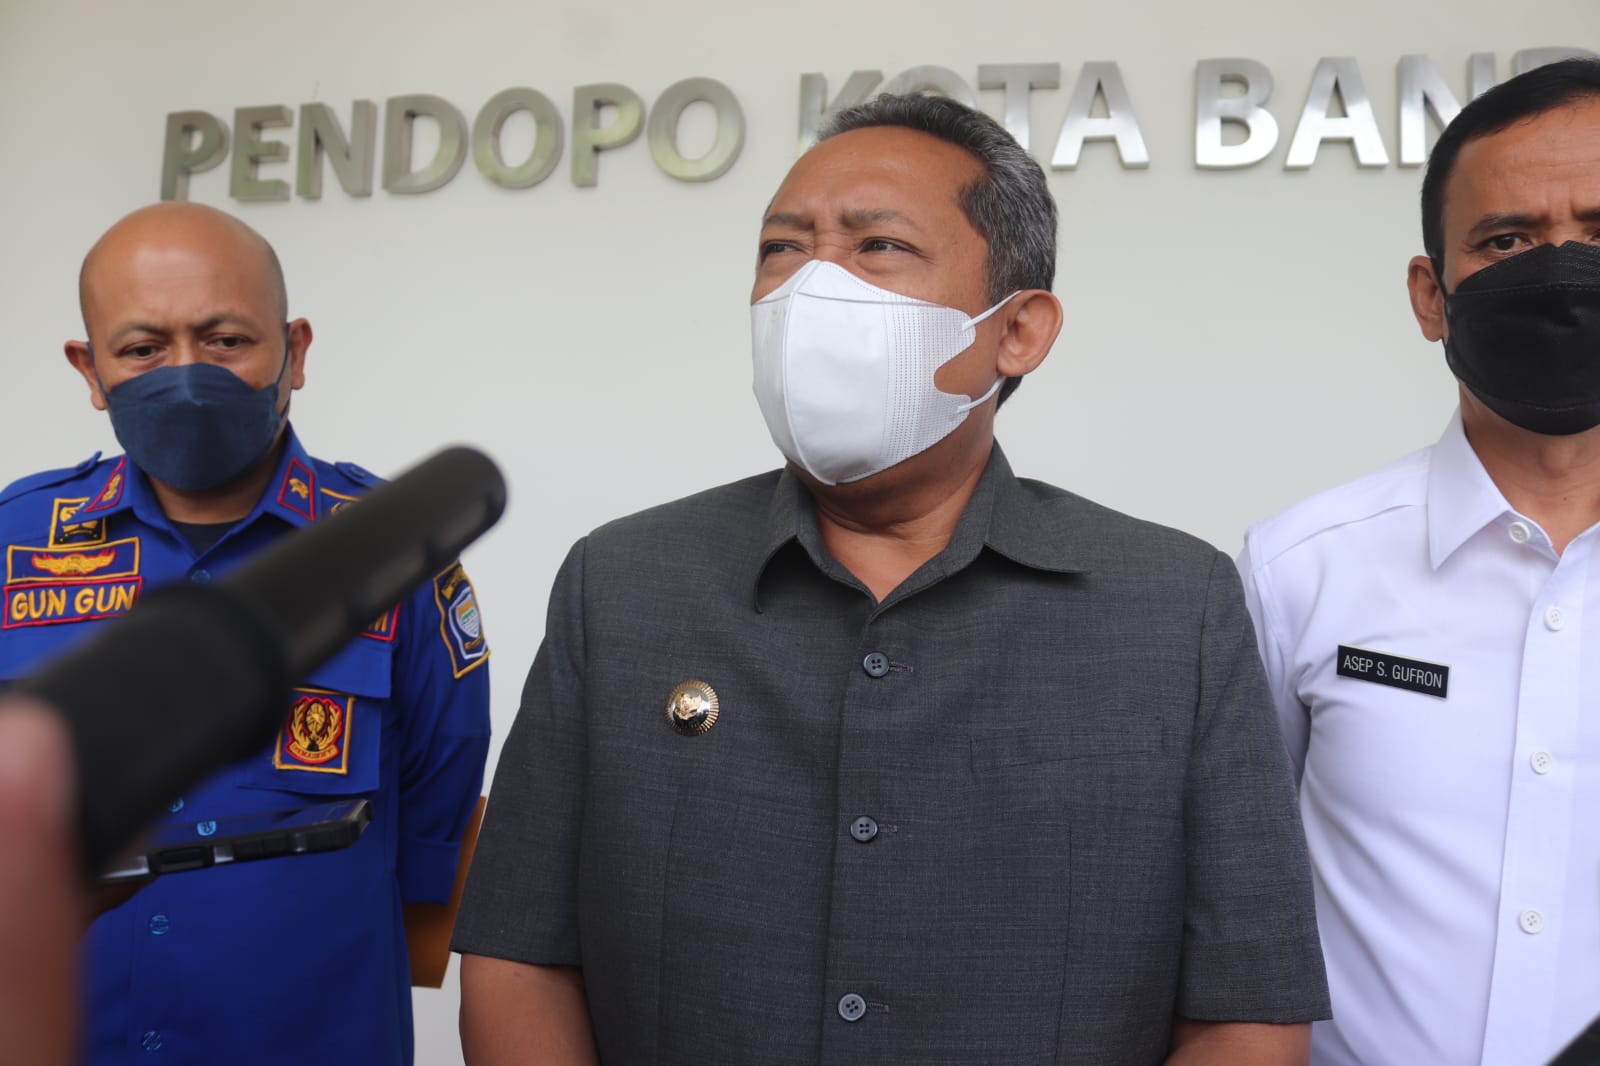 Wali Kota Bandung Yana Mulyana saat memberi paparan kepada wartawan di Pendopo Kota Bandung, Jl. Dalem Kaum No.56, Rabu (27/4).